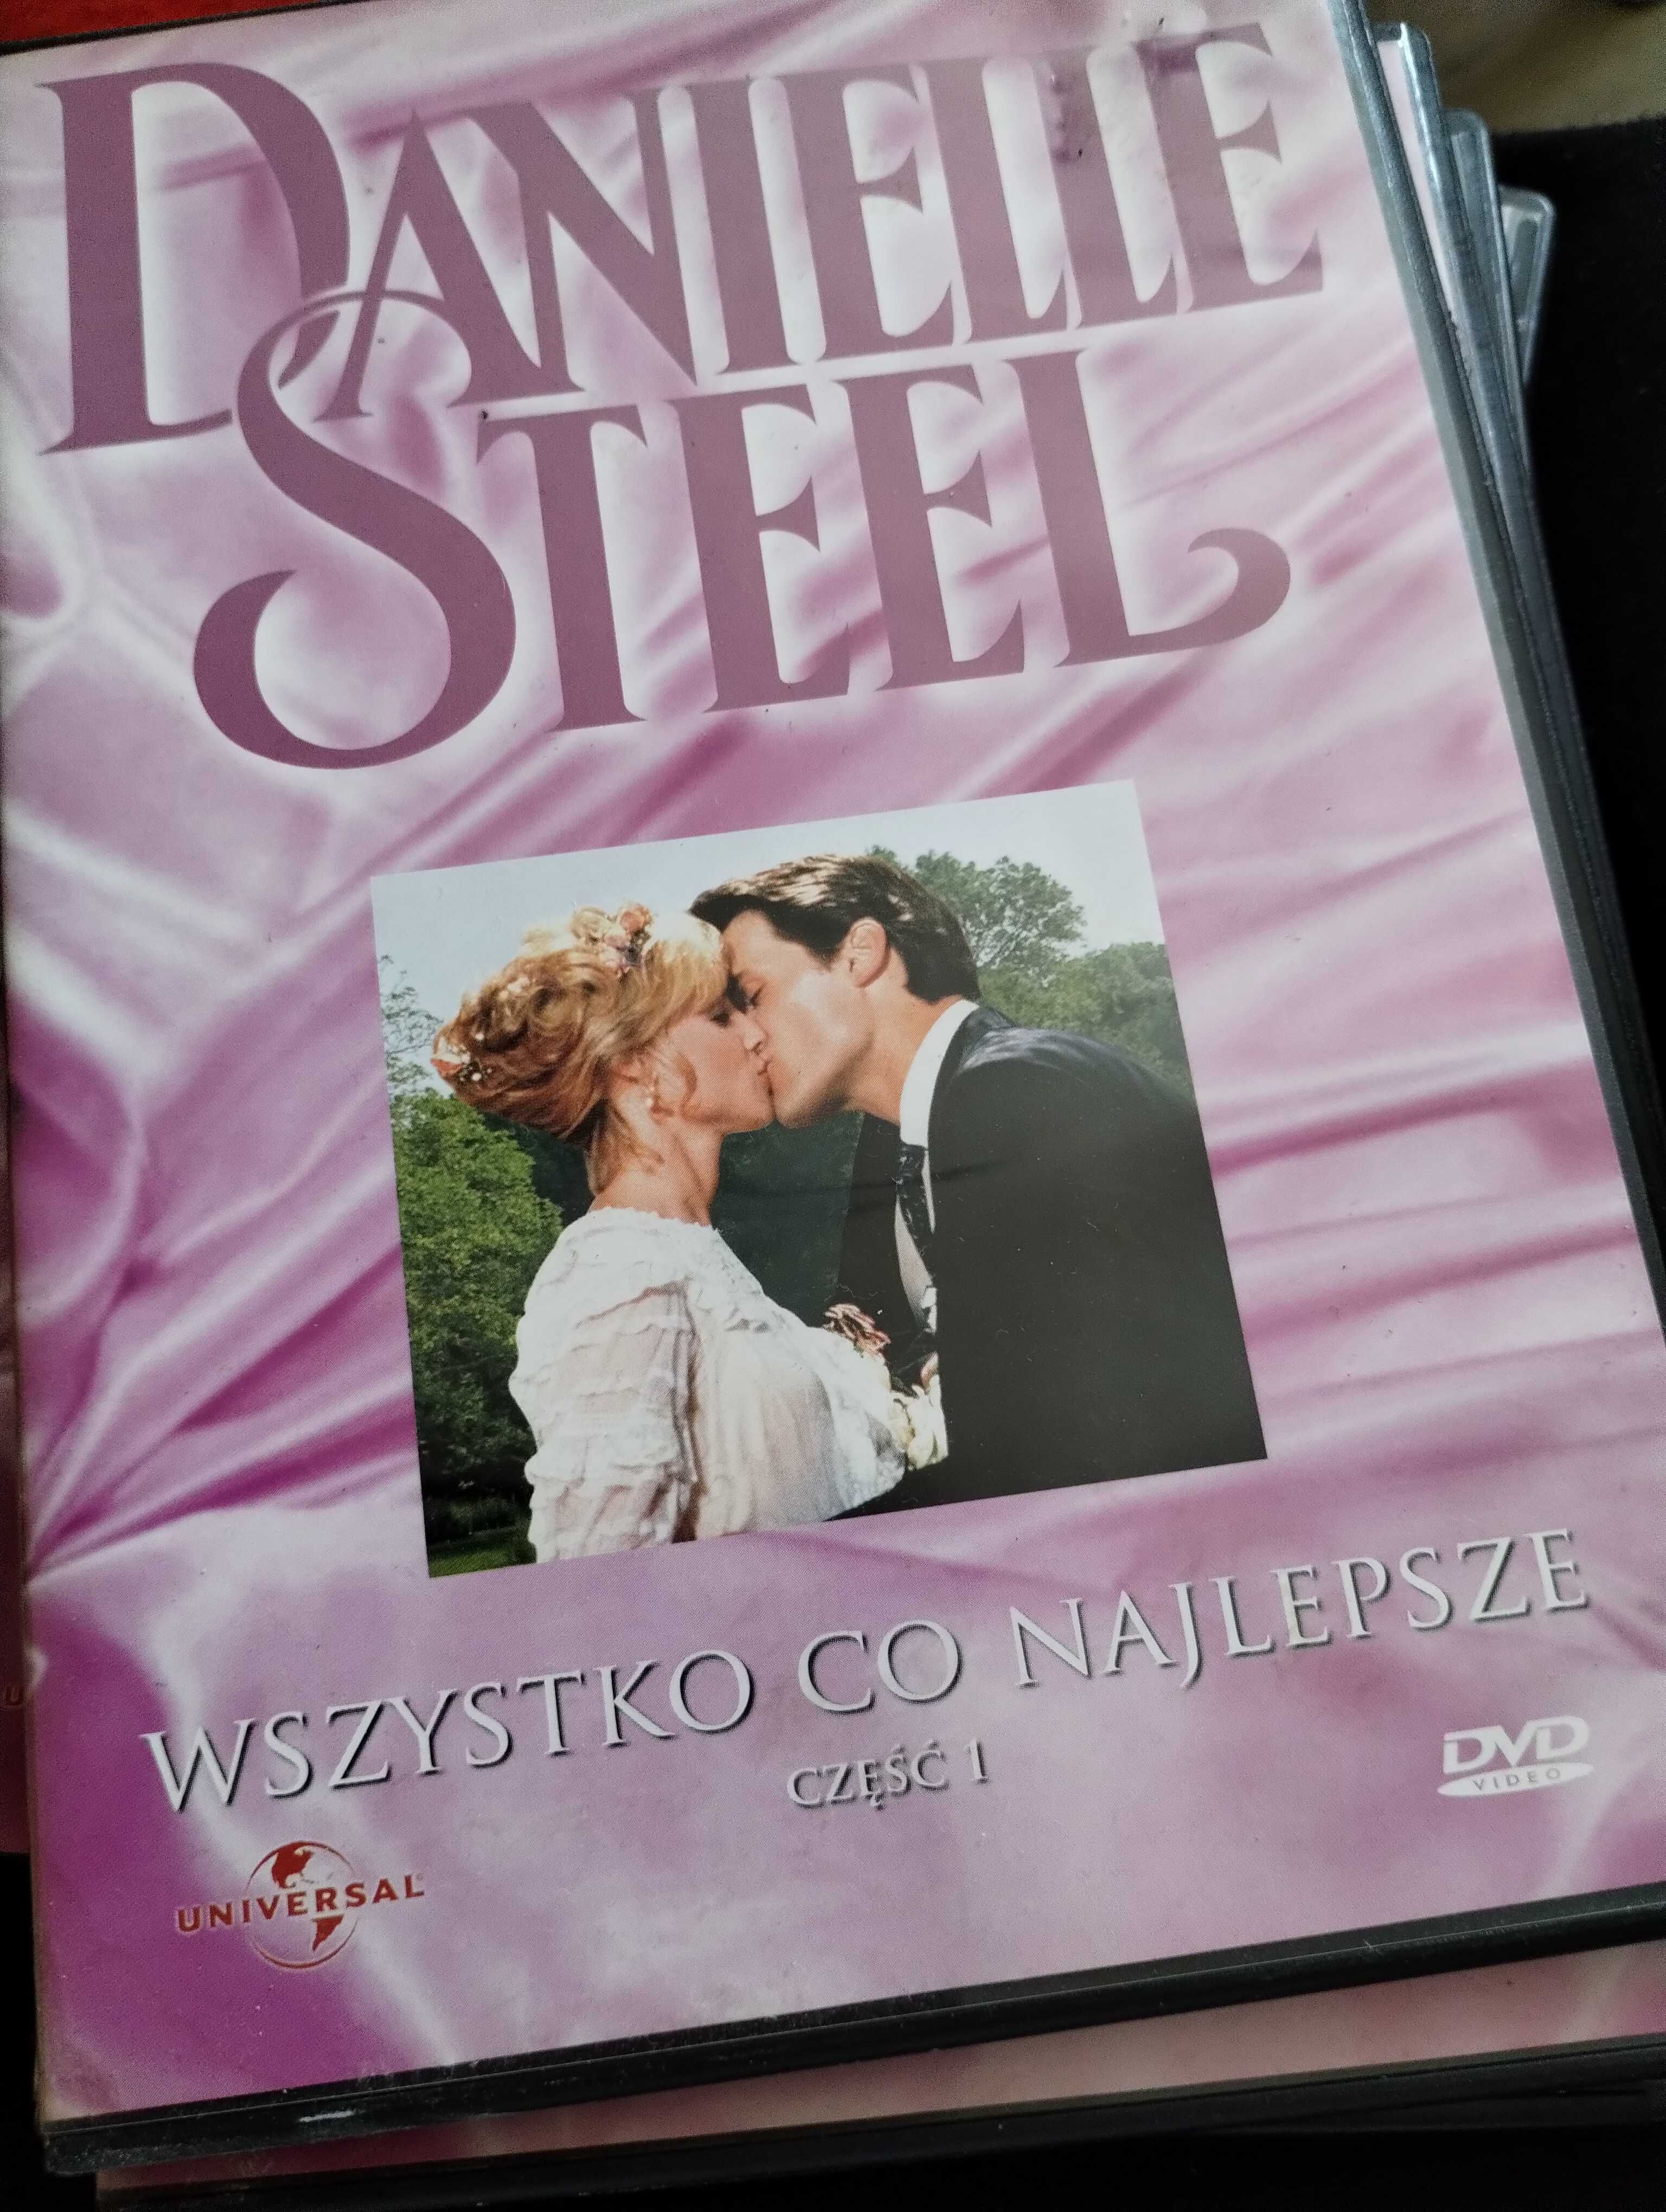 Sprzedam płyty z filmami na dvd. Danielle steel